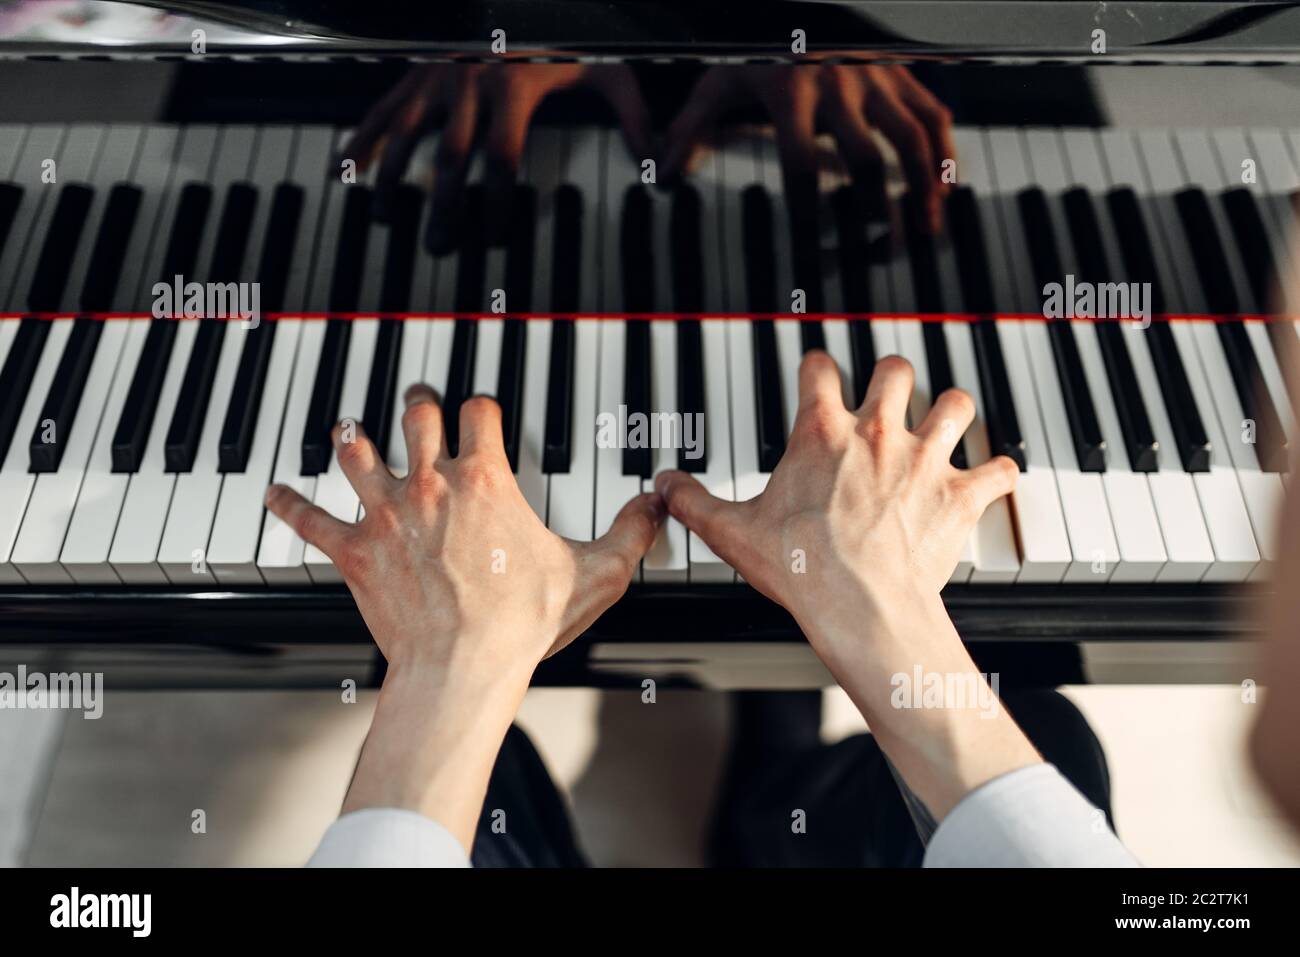 Pianista masculino manos en el teclado del piano de cola, vista superior.  Músico practicando la melodía en el royale, instrumento musical clásico  Fotografía de stock - Alamy